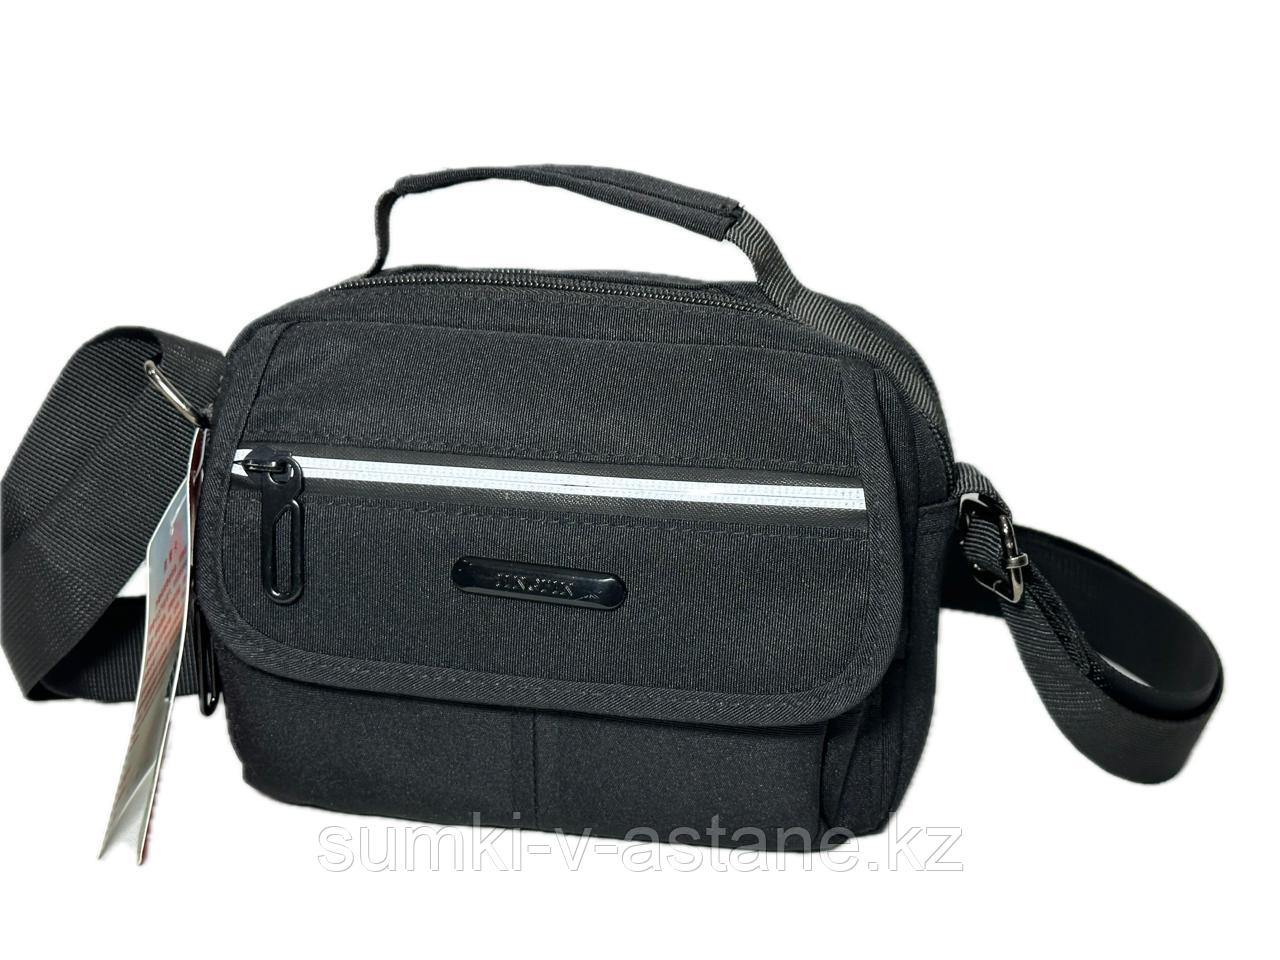 Мужская сумка через плечо, кросс-боди "JINGPIN". Высота 14 см, ширина 20 см, глубина 7 см.